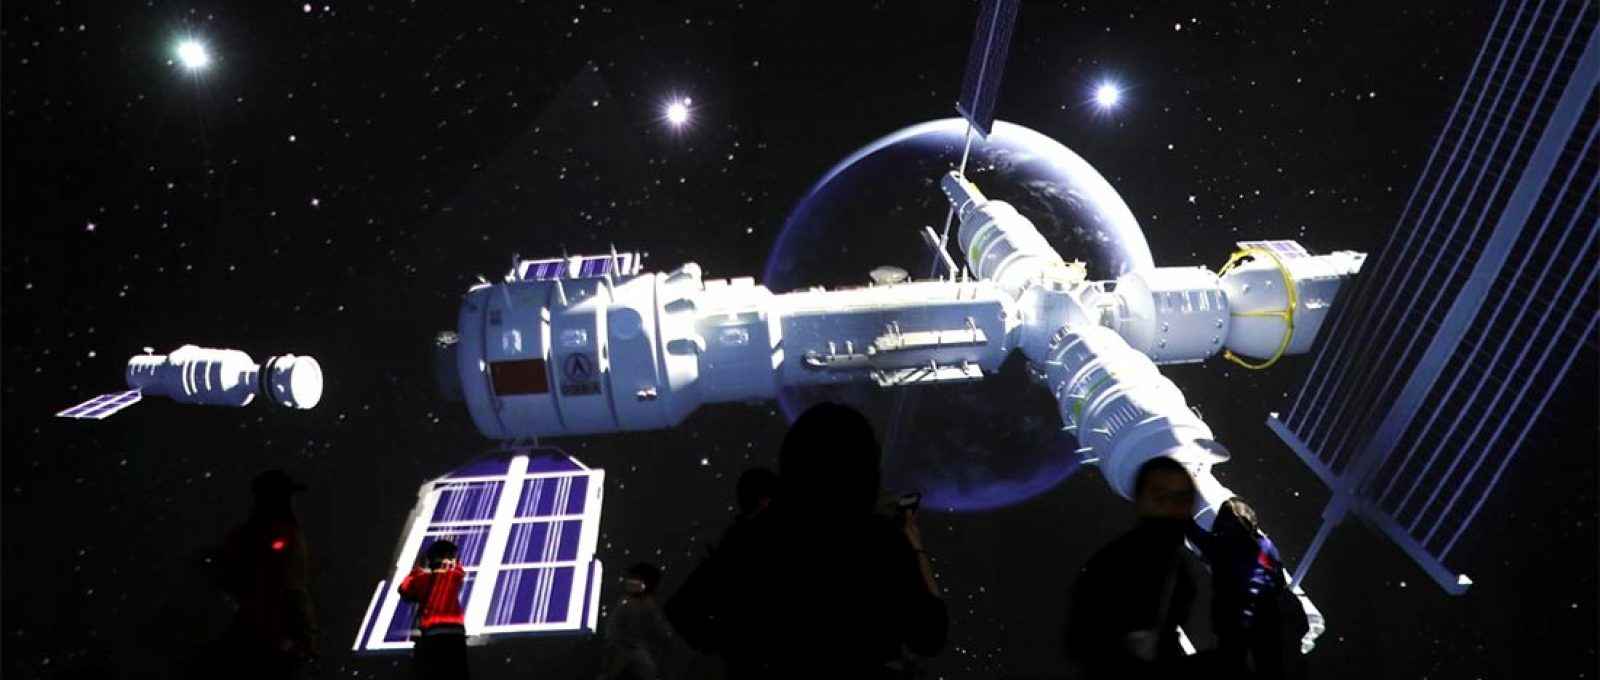 Visitantes perto de tela gigante com imagens da estação espacial Tianhe em exposição que mostra o desenvolvimento da exploração espacial chinesa no Museu de Ciência e Tecnologia da China em Pequim (Foto: Tingshu Wang/Reuters).